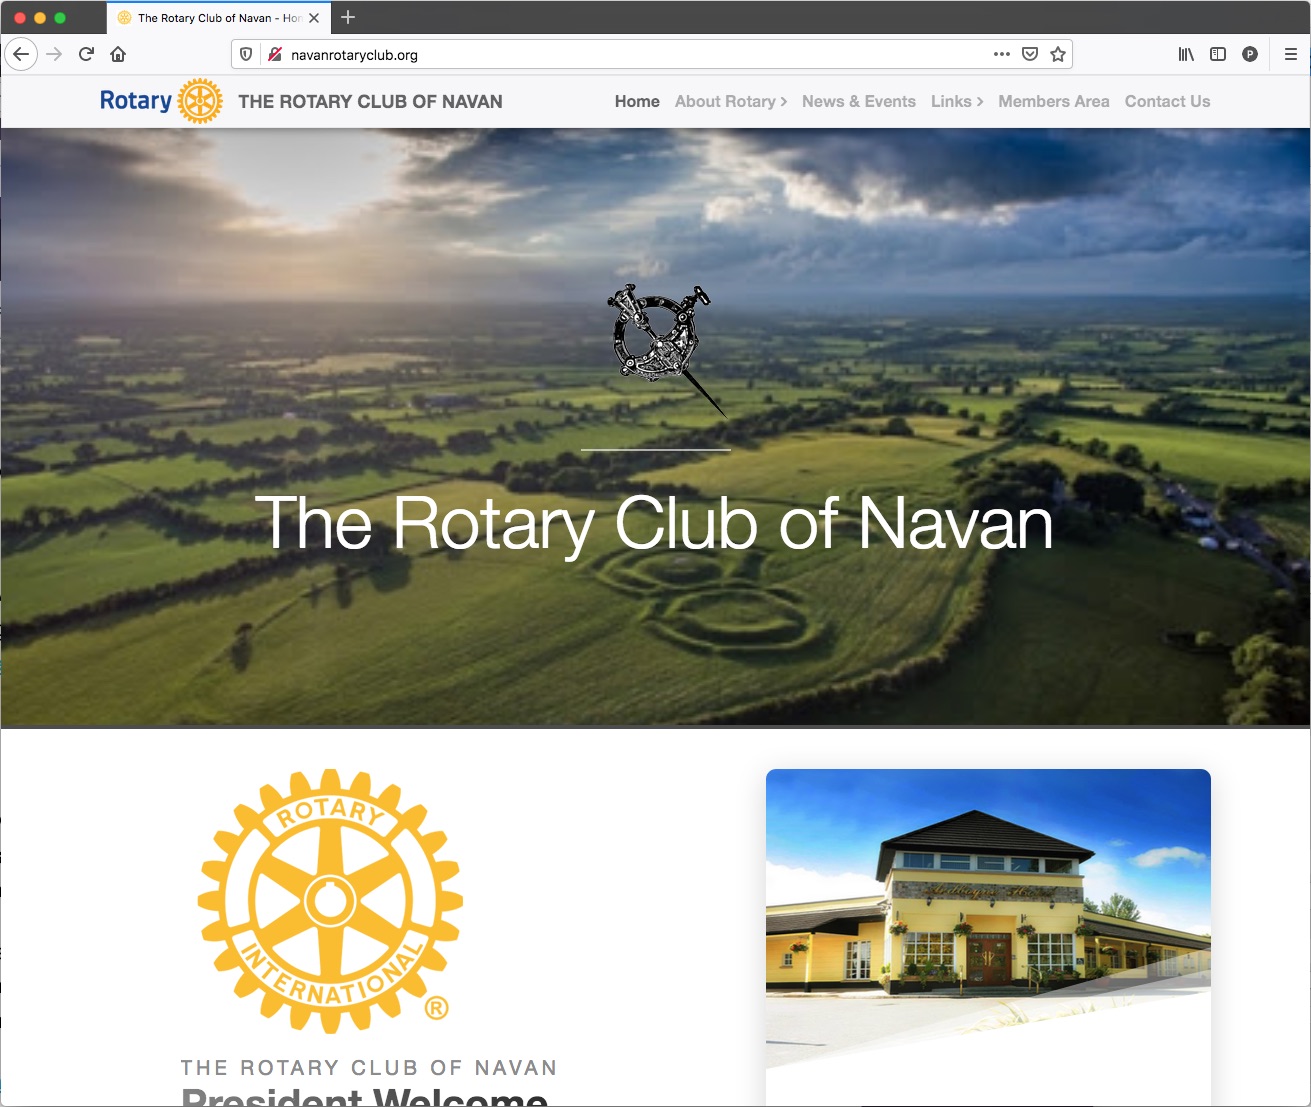 The Rotary Club of Navan website